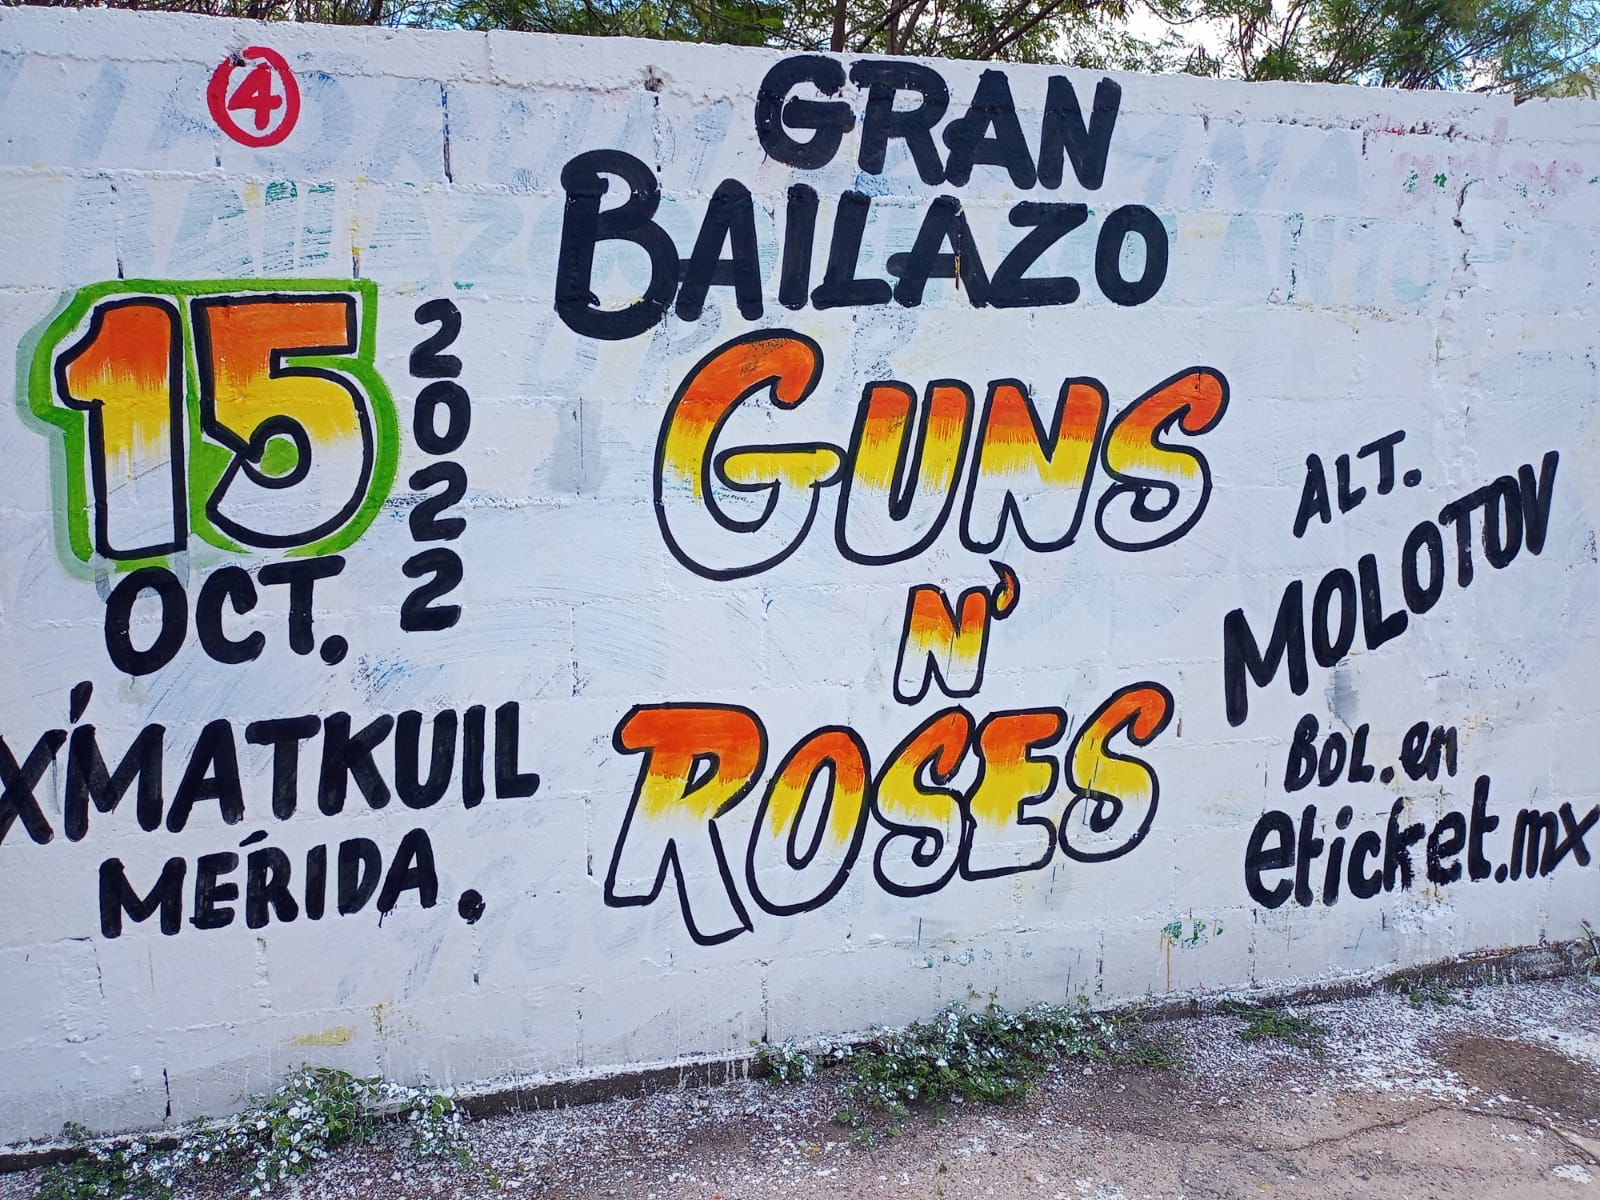 Guns N' Roses Promociona Su Concierto En Mérida Como Un 'Gran Bailazo' El Rótulo Se Volvió Viral En Cuanto Se Colgó En Las Redes Sociales, Por La Peculiaridad Con Que Se Anuncia El Concierto,&Nbsp;El Cual Fue Descrito Como Un ‘Gran Bailazo’.&Nbsp; Https://Larevistadelsureste.com